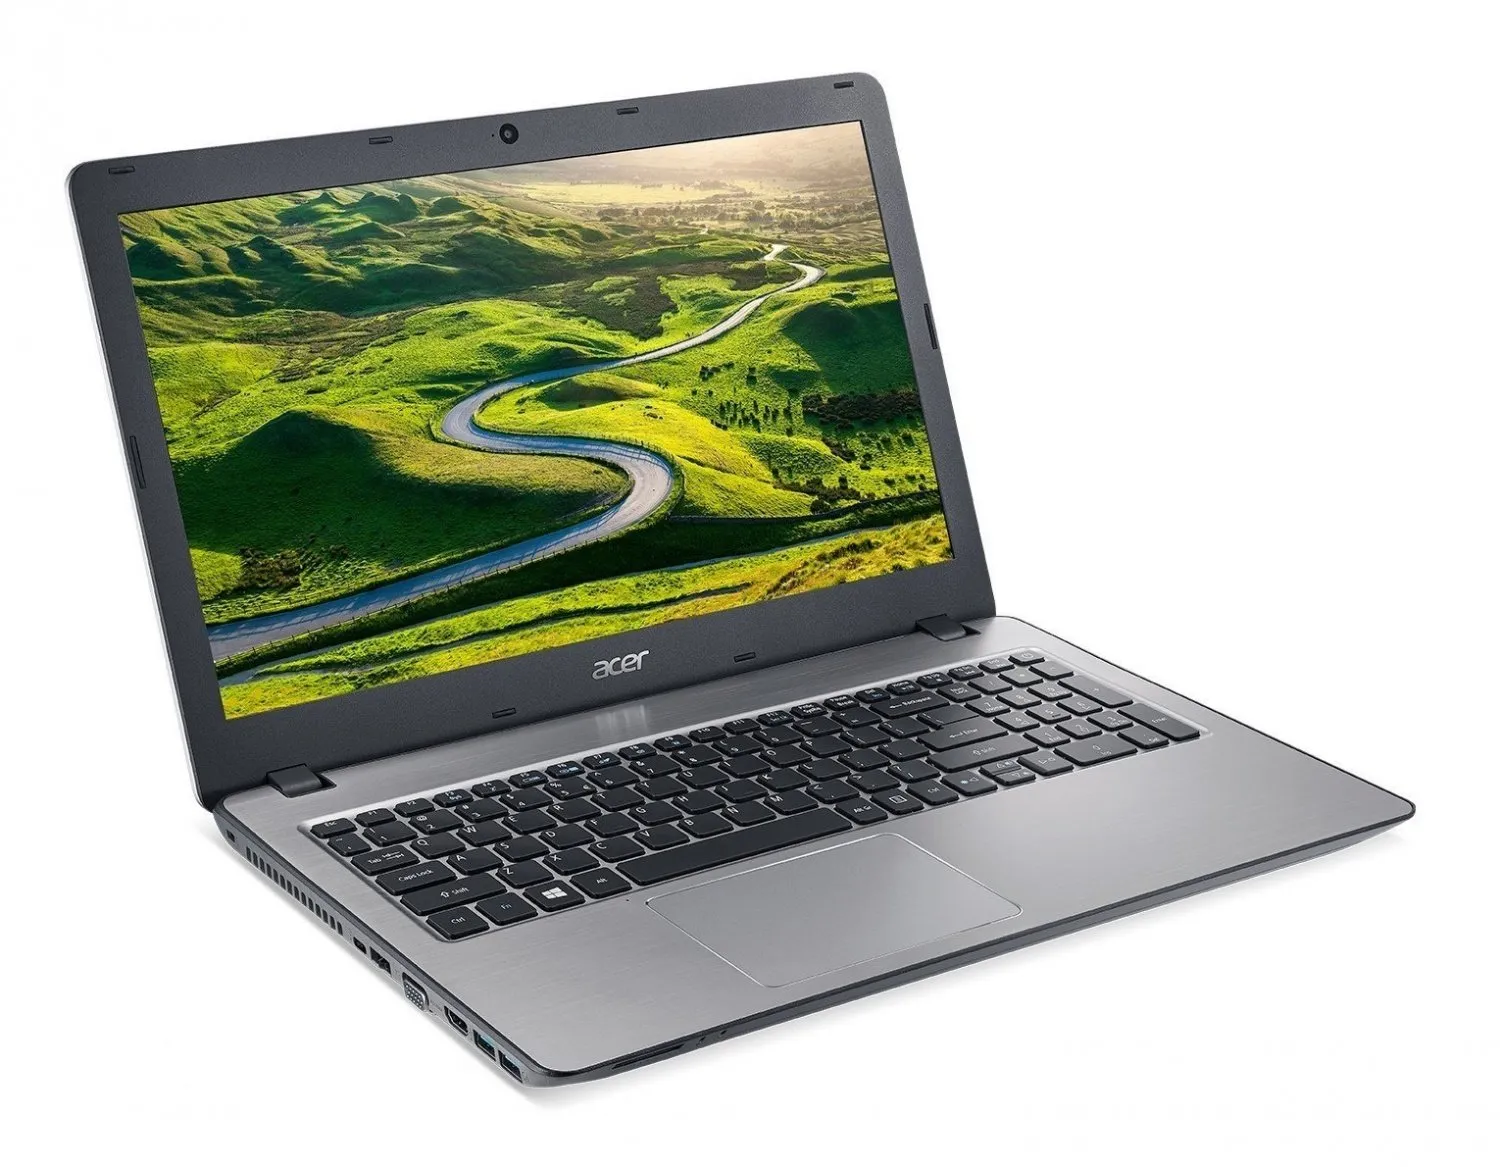 Noutbuk Acer ES15 / Celeron 3060/ DDR3 2 GB/ 500GB HDD /15.6" HD LED/ UMA/ DVD / RUS#6